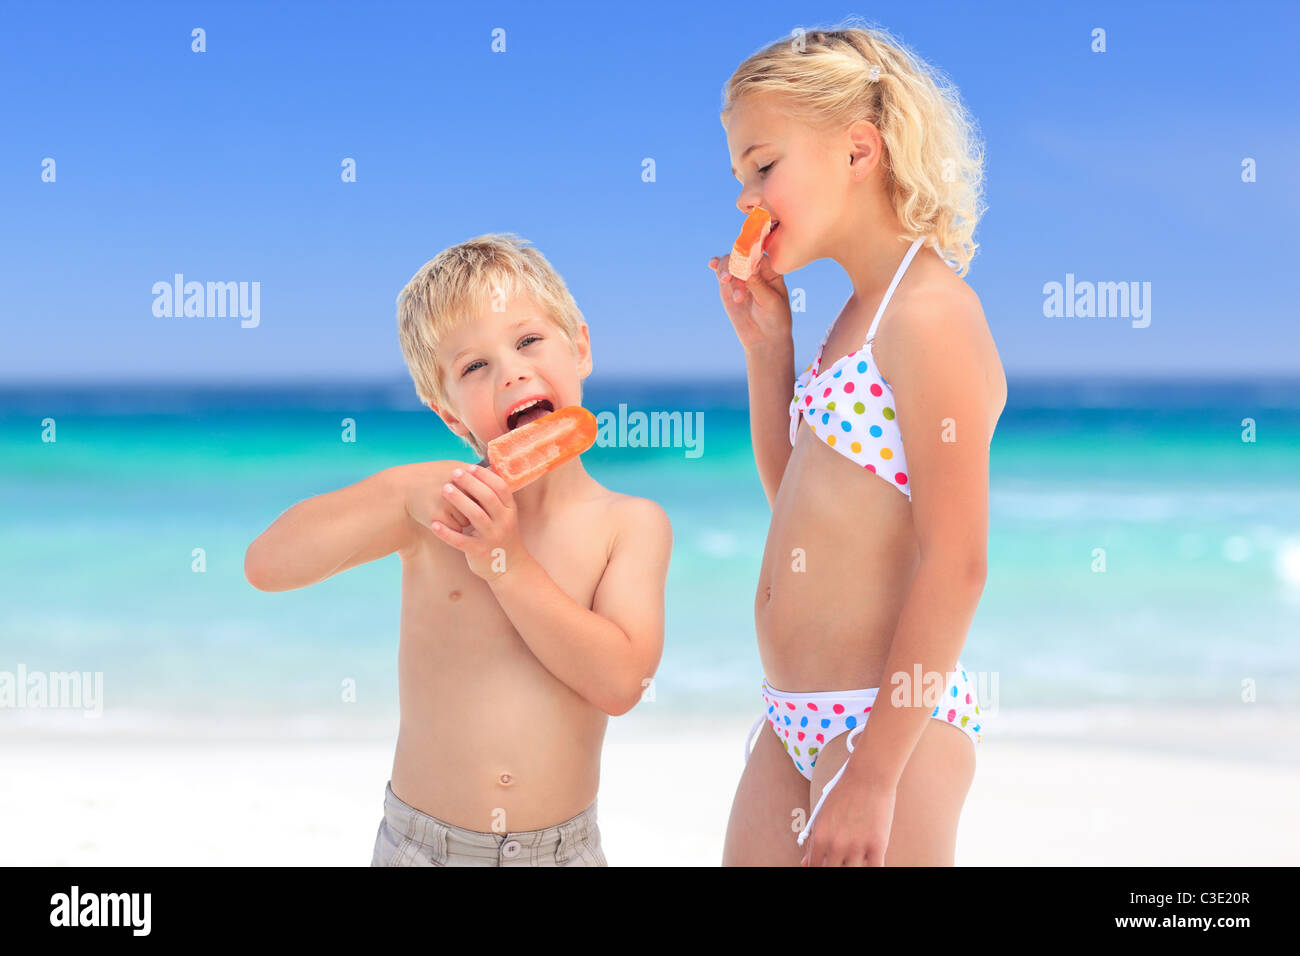 Bruder und Schwester ein Eis essen Stockfotografie - Alamy